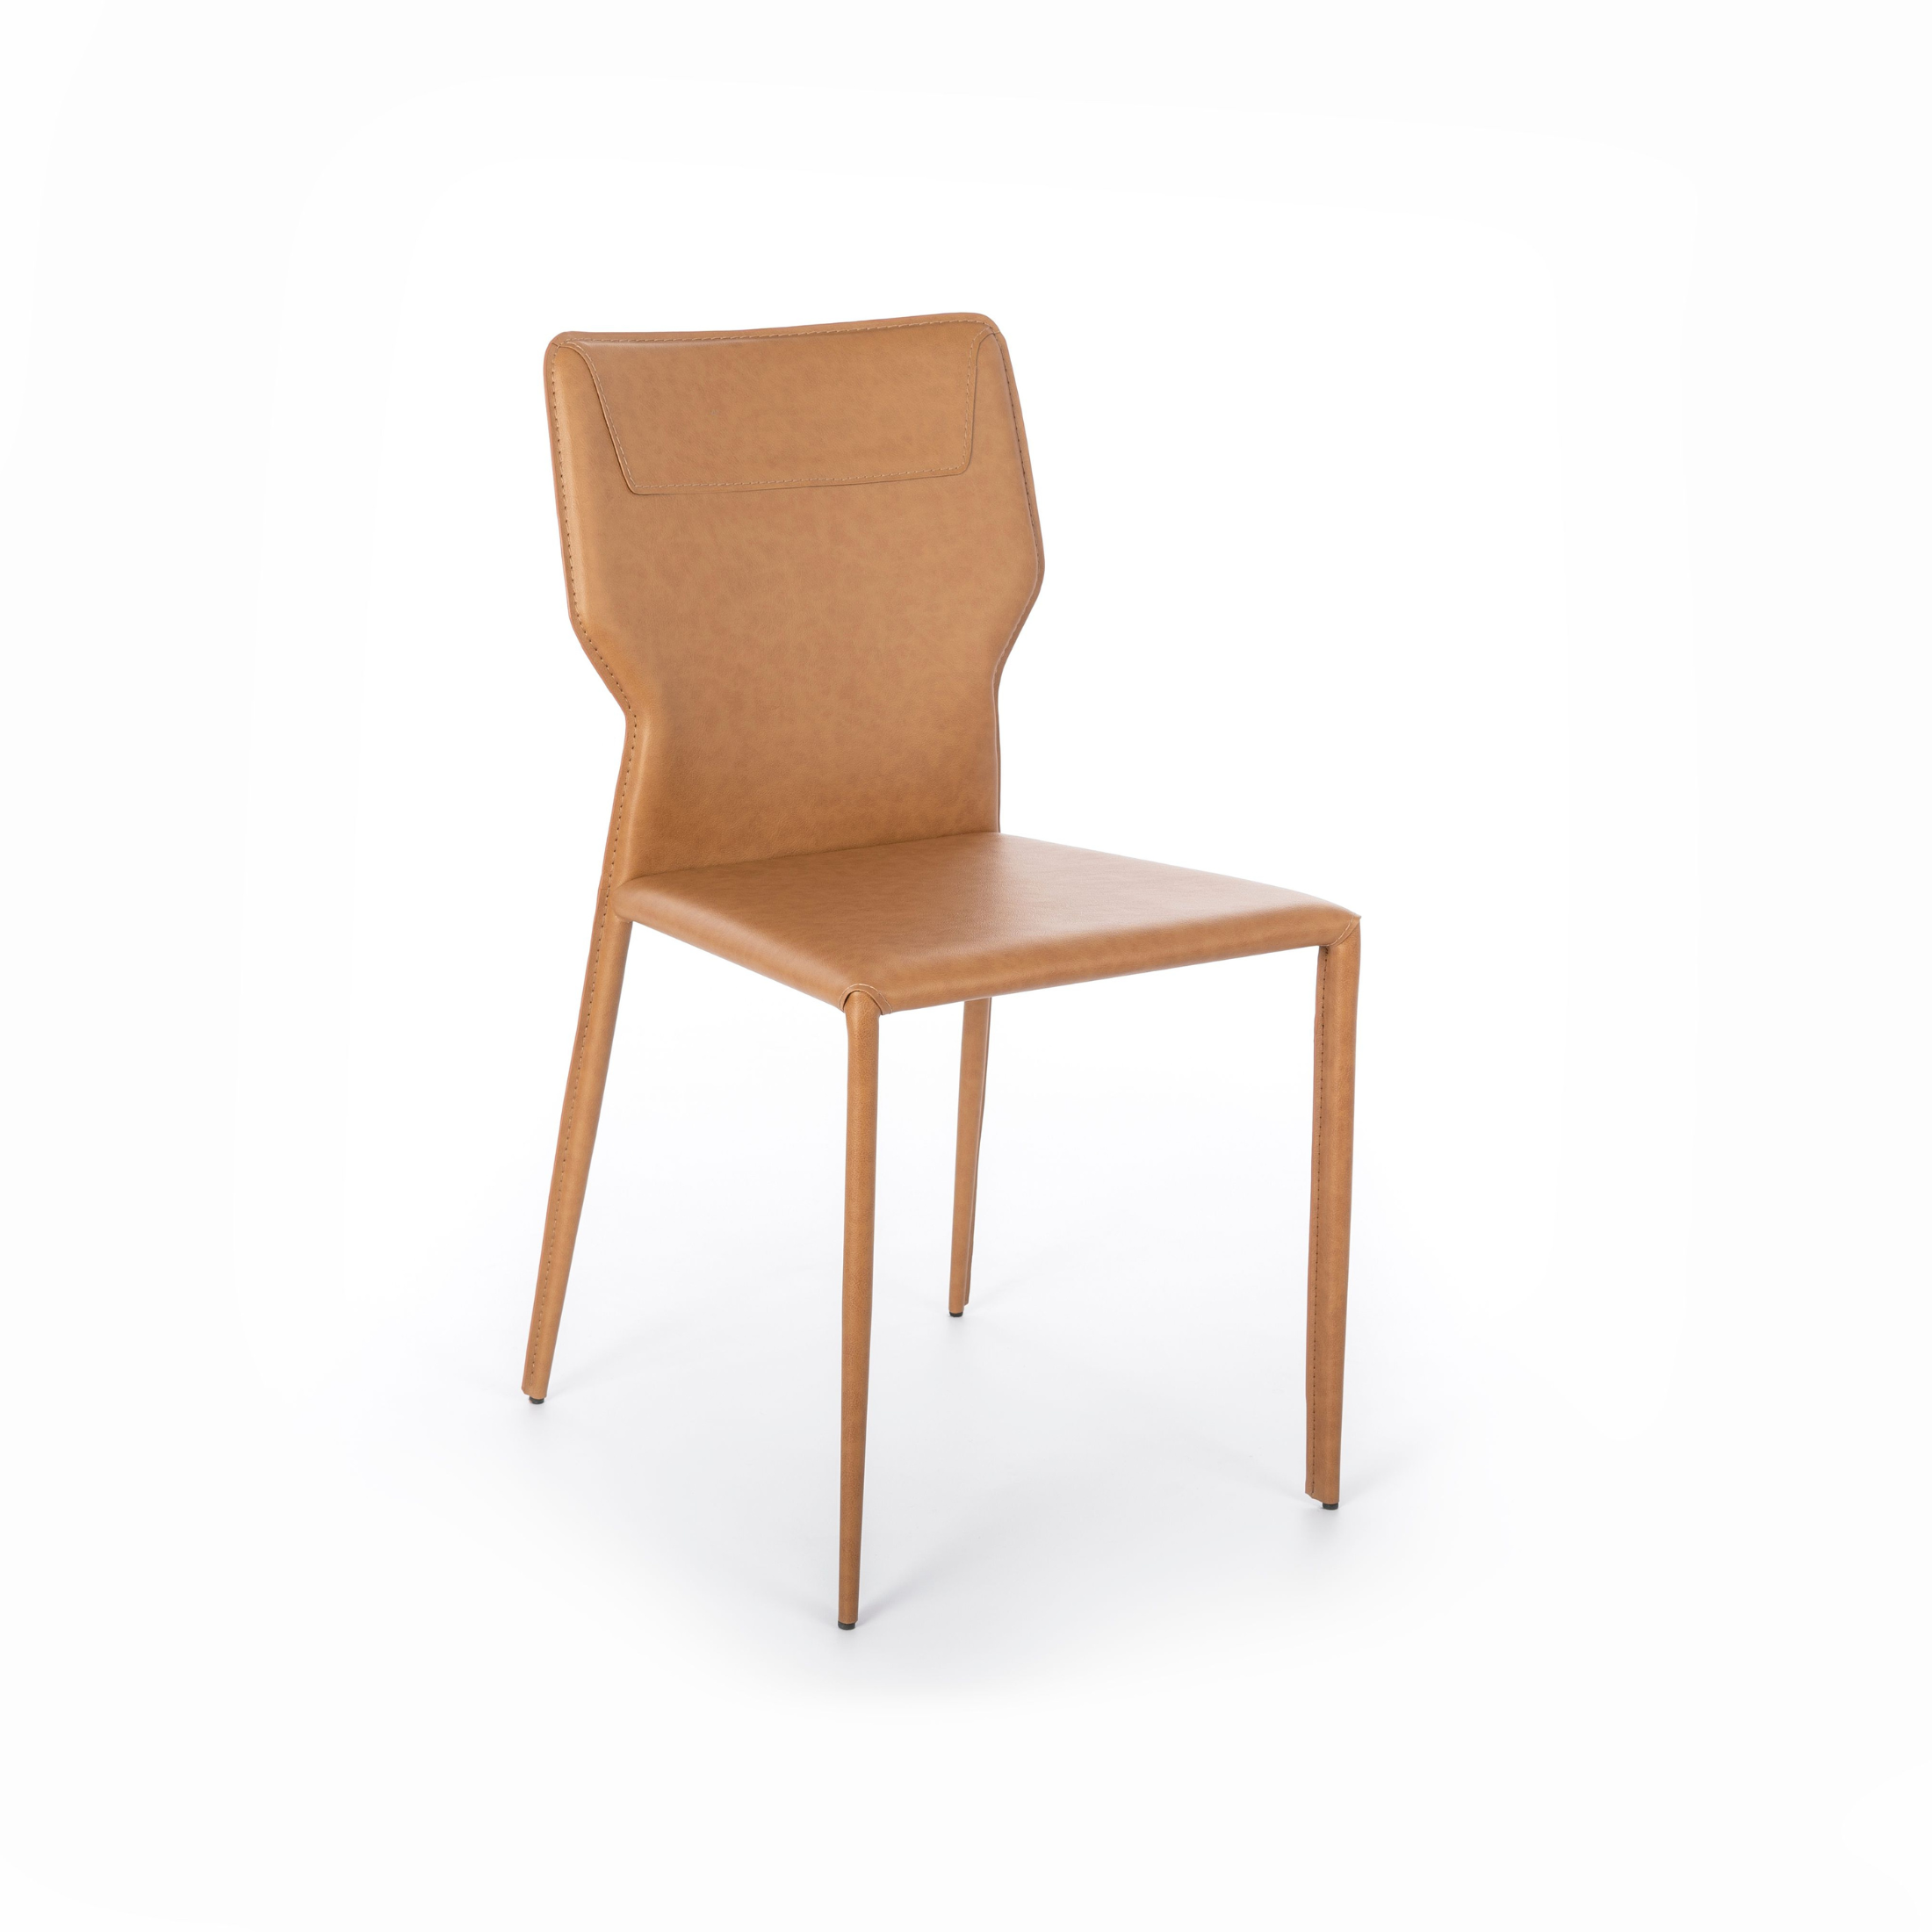 Chaise moderne "Kim" en simili cuir avec pieds en métal 44x56 cm 86,5h